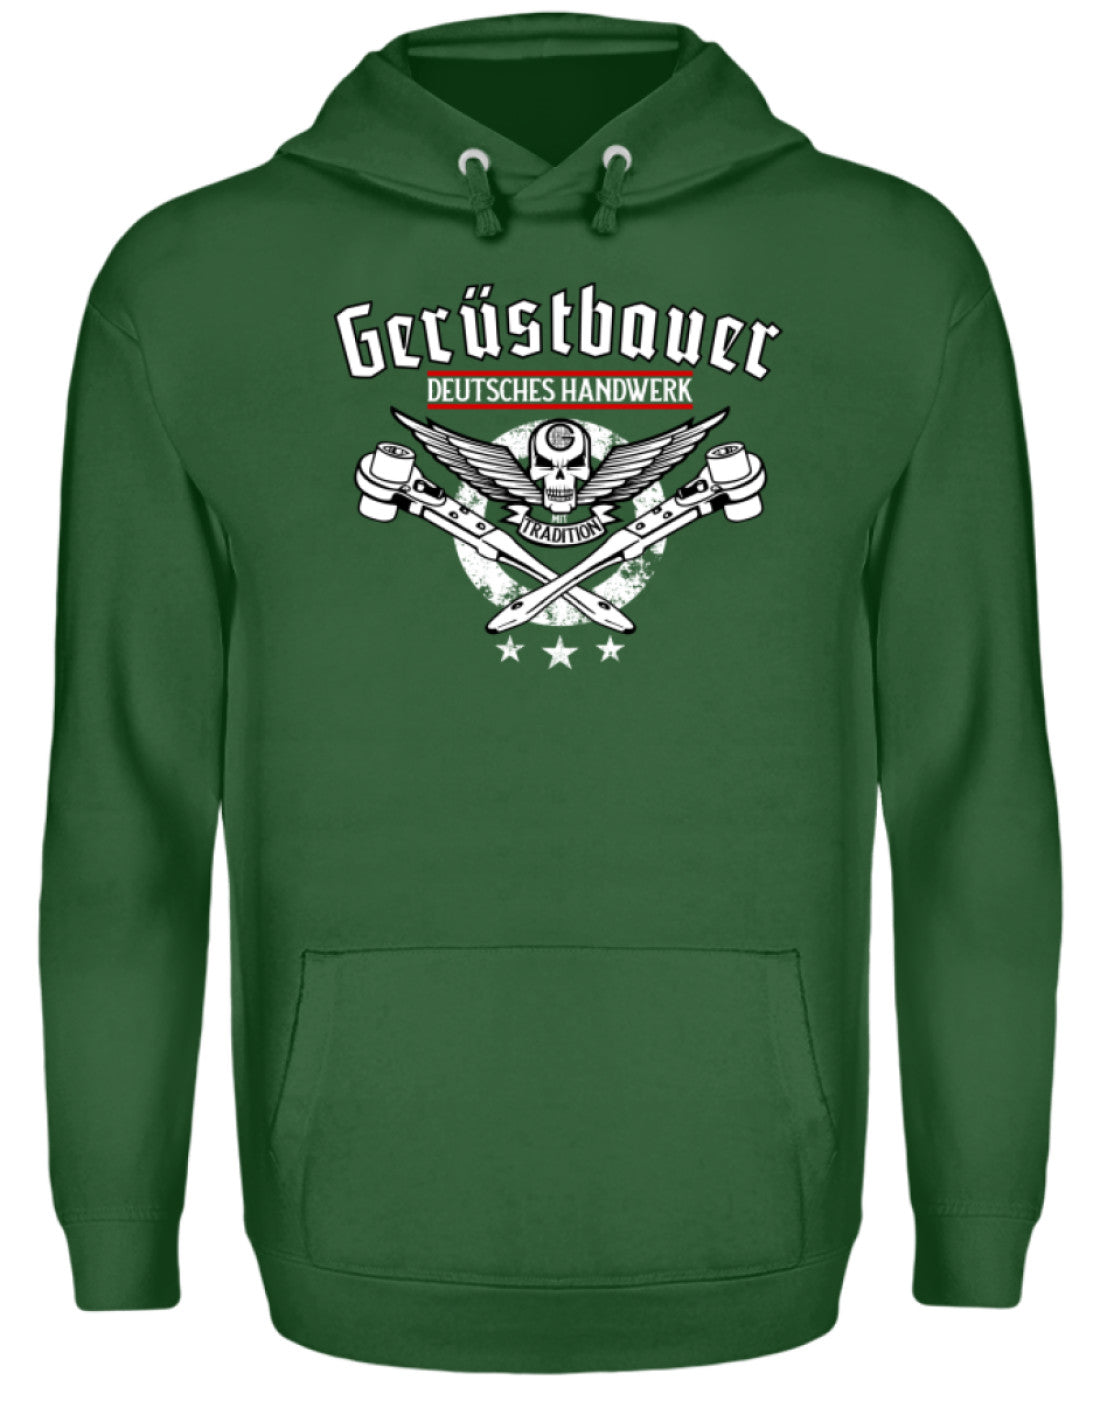 Gerüstbauer Handwerk mit Tradition  - Unisex Kapuzenpullover Hoodie €34.95 Gerüstbauer - Shop >>